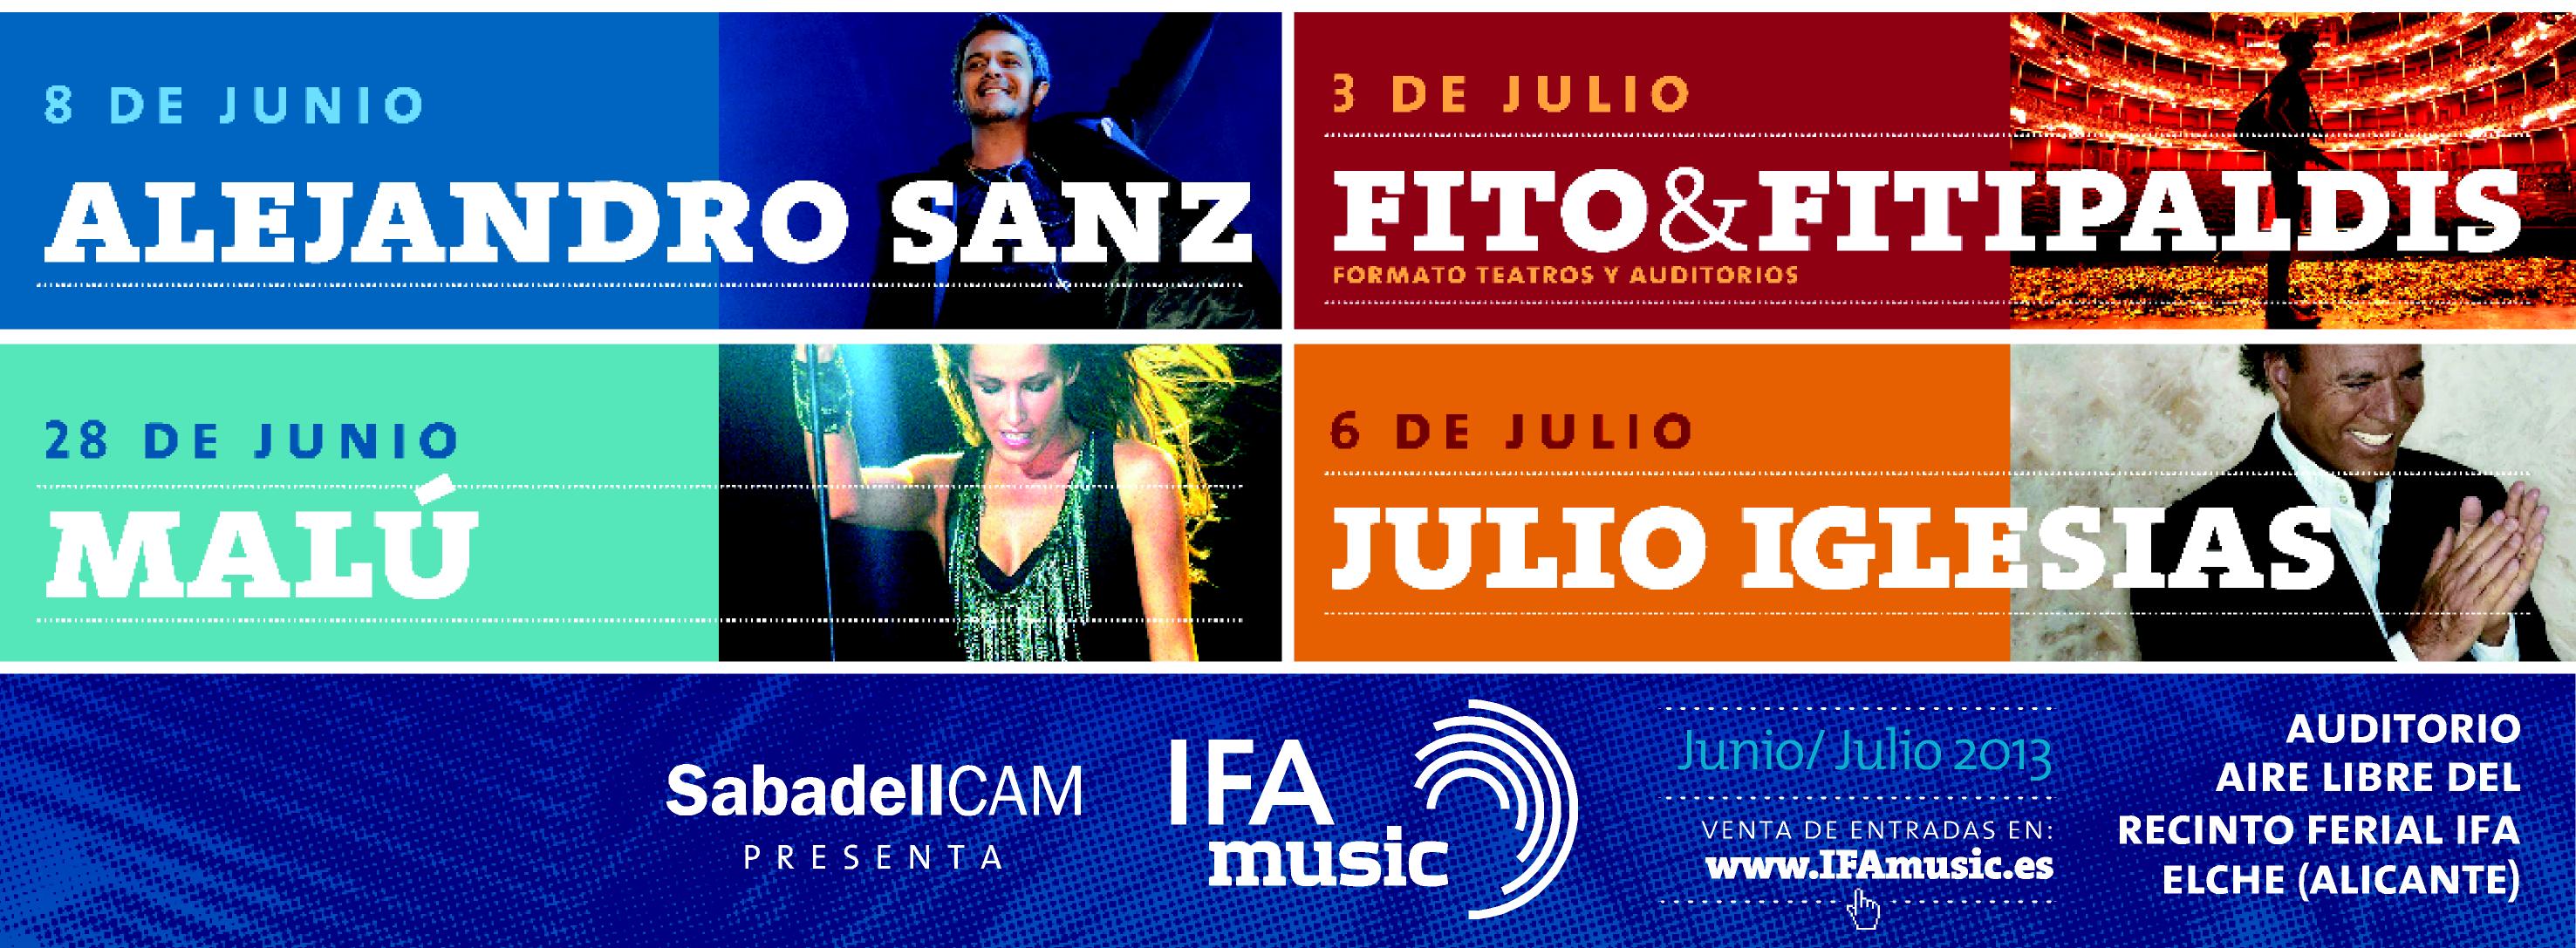 IFA Music arranca este sábado con la actuación de Alejandro Sanz